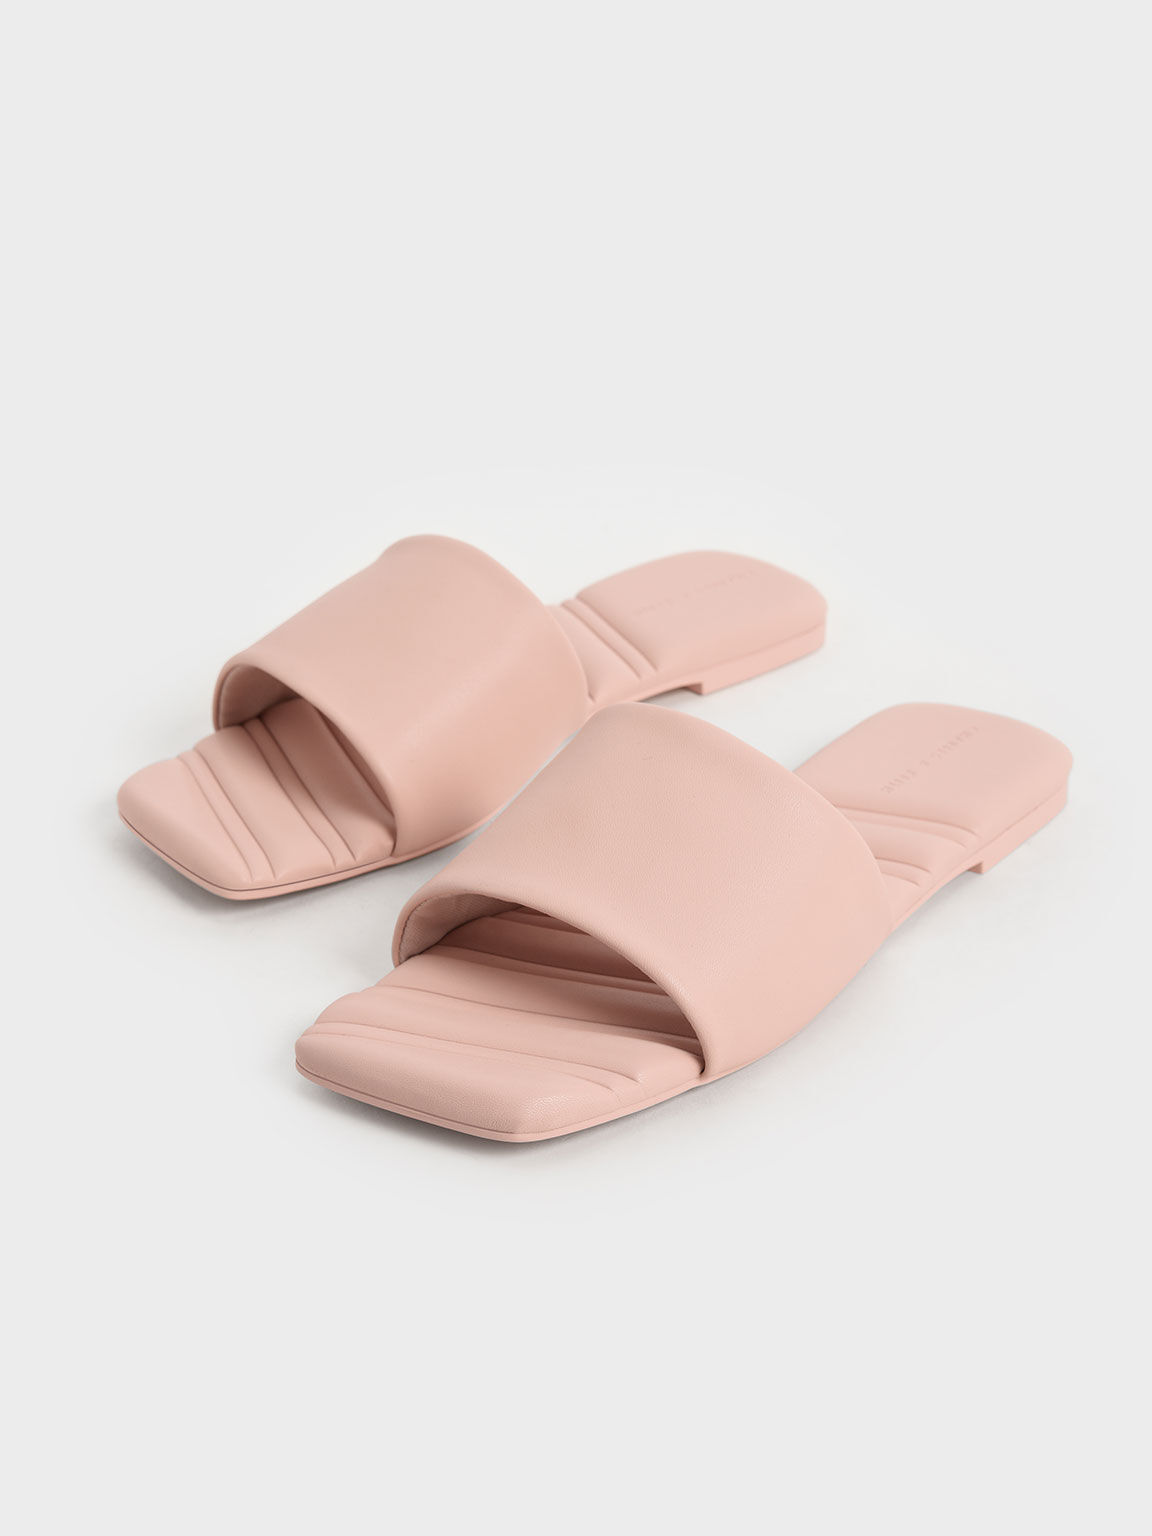 Square Toe Padded Slide Sandals, Light Pink, hi-res